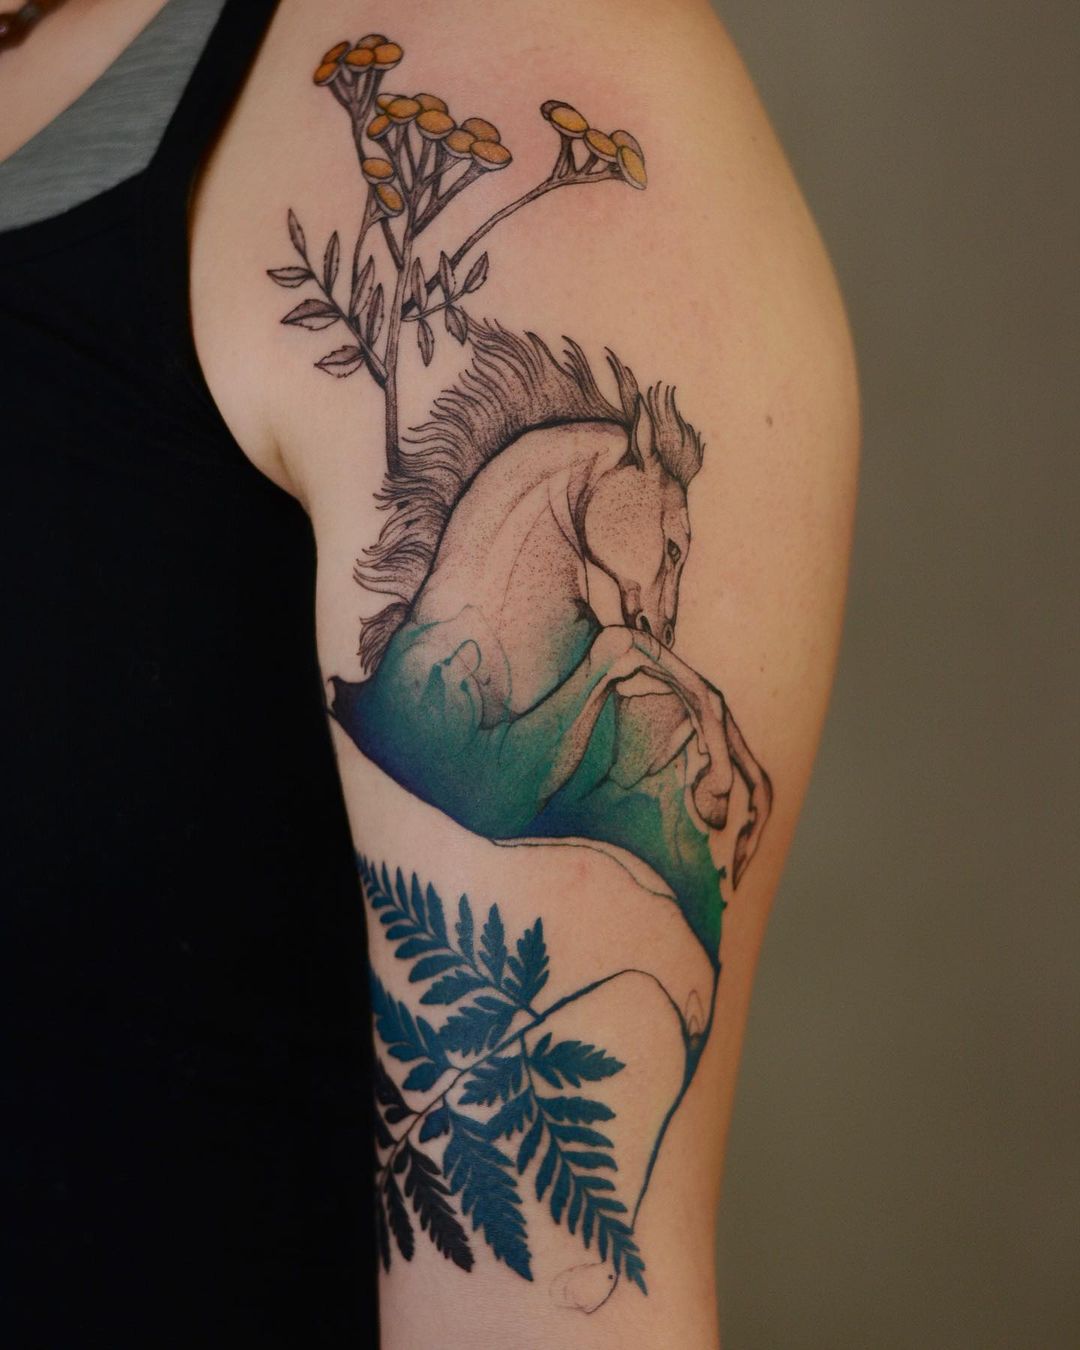 Nature-Inspired Tattoo Art by Dzo Lamka